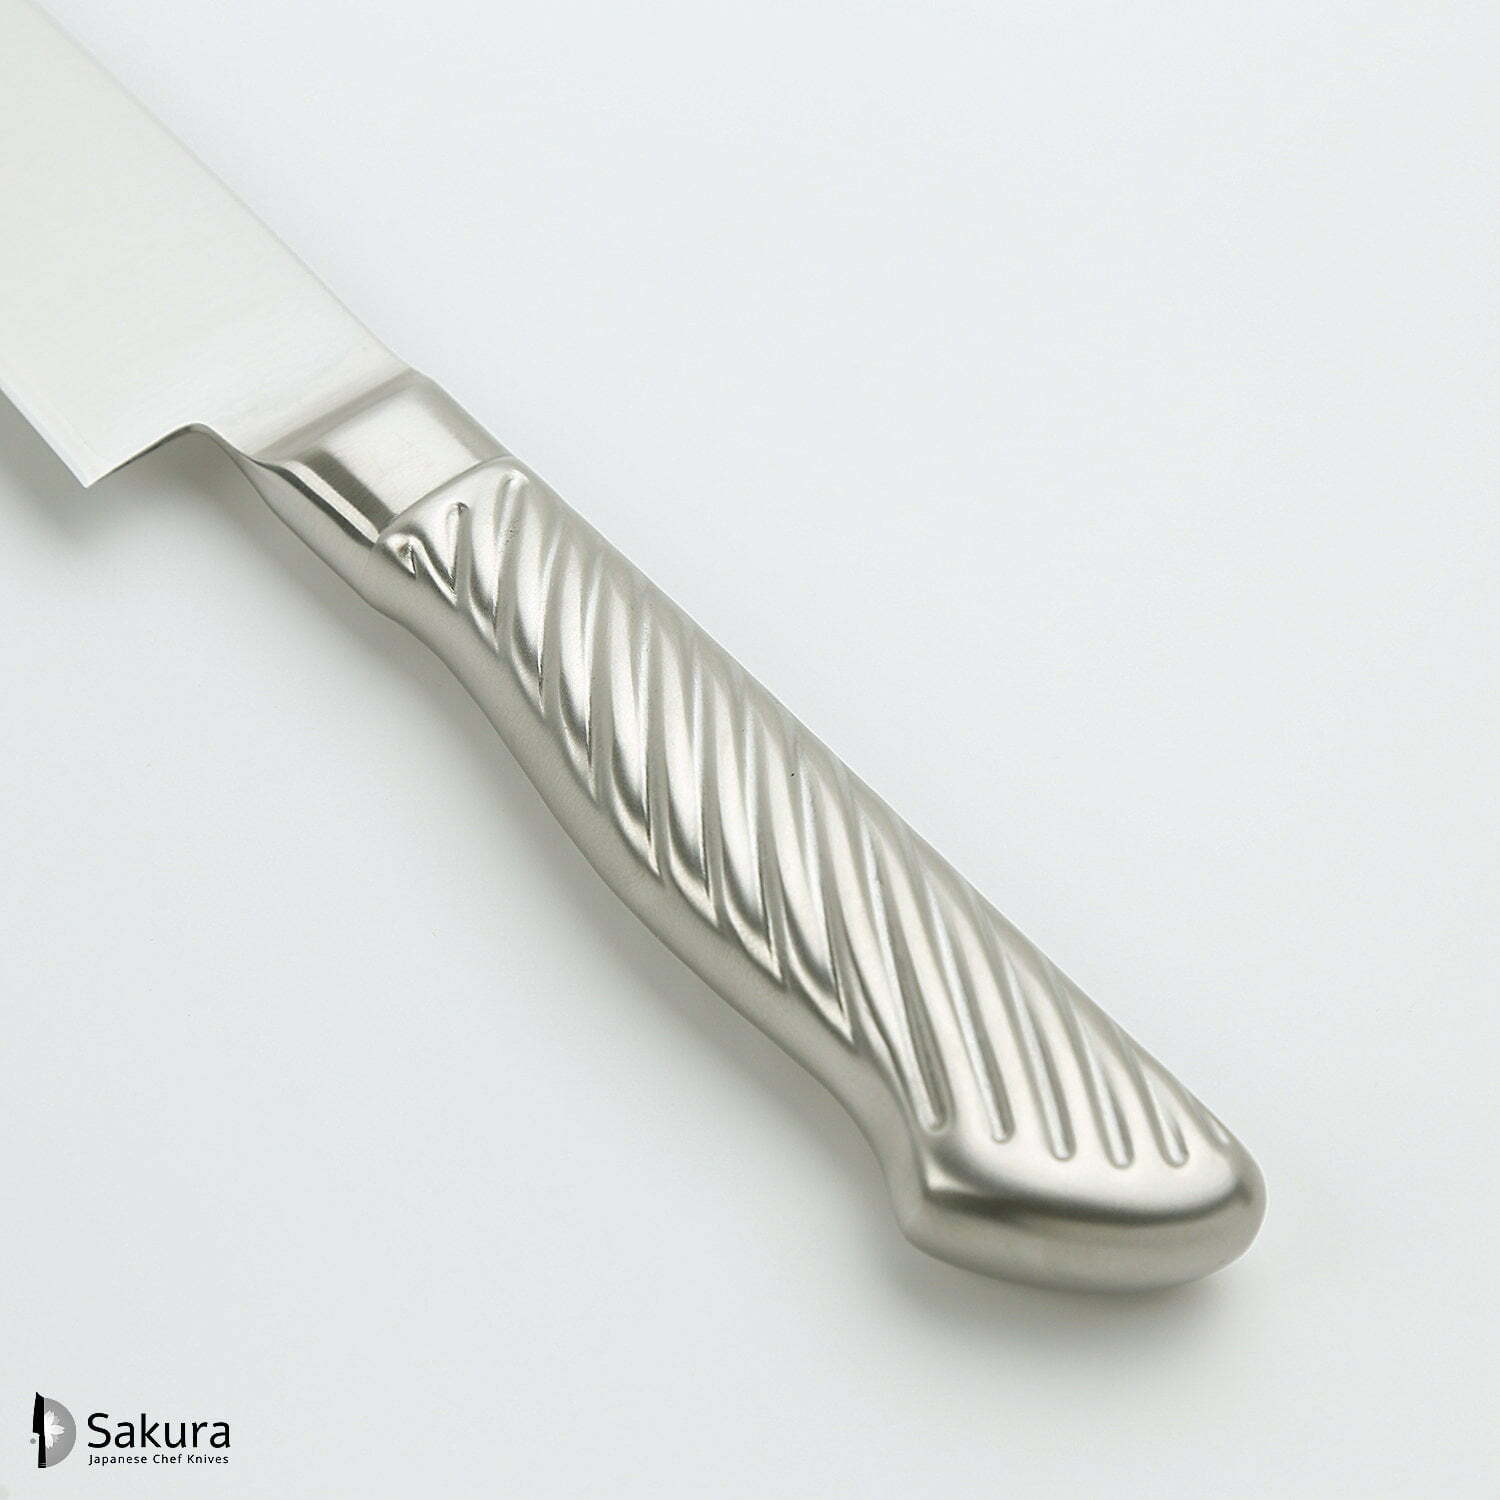 סכין חיתוך ופריסת בשר סוּגִּ’יהִיקִי 240מ״מ מחוזקת 3 שכבות: פלדת פחמן יפנית VG-10 עטופה פלדת אל-חלד גימור מט מלוטש טוג׳ירו יפן